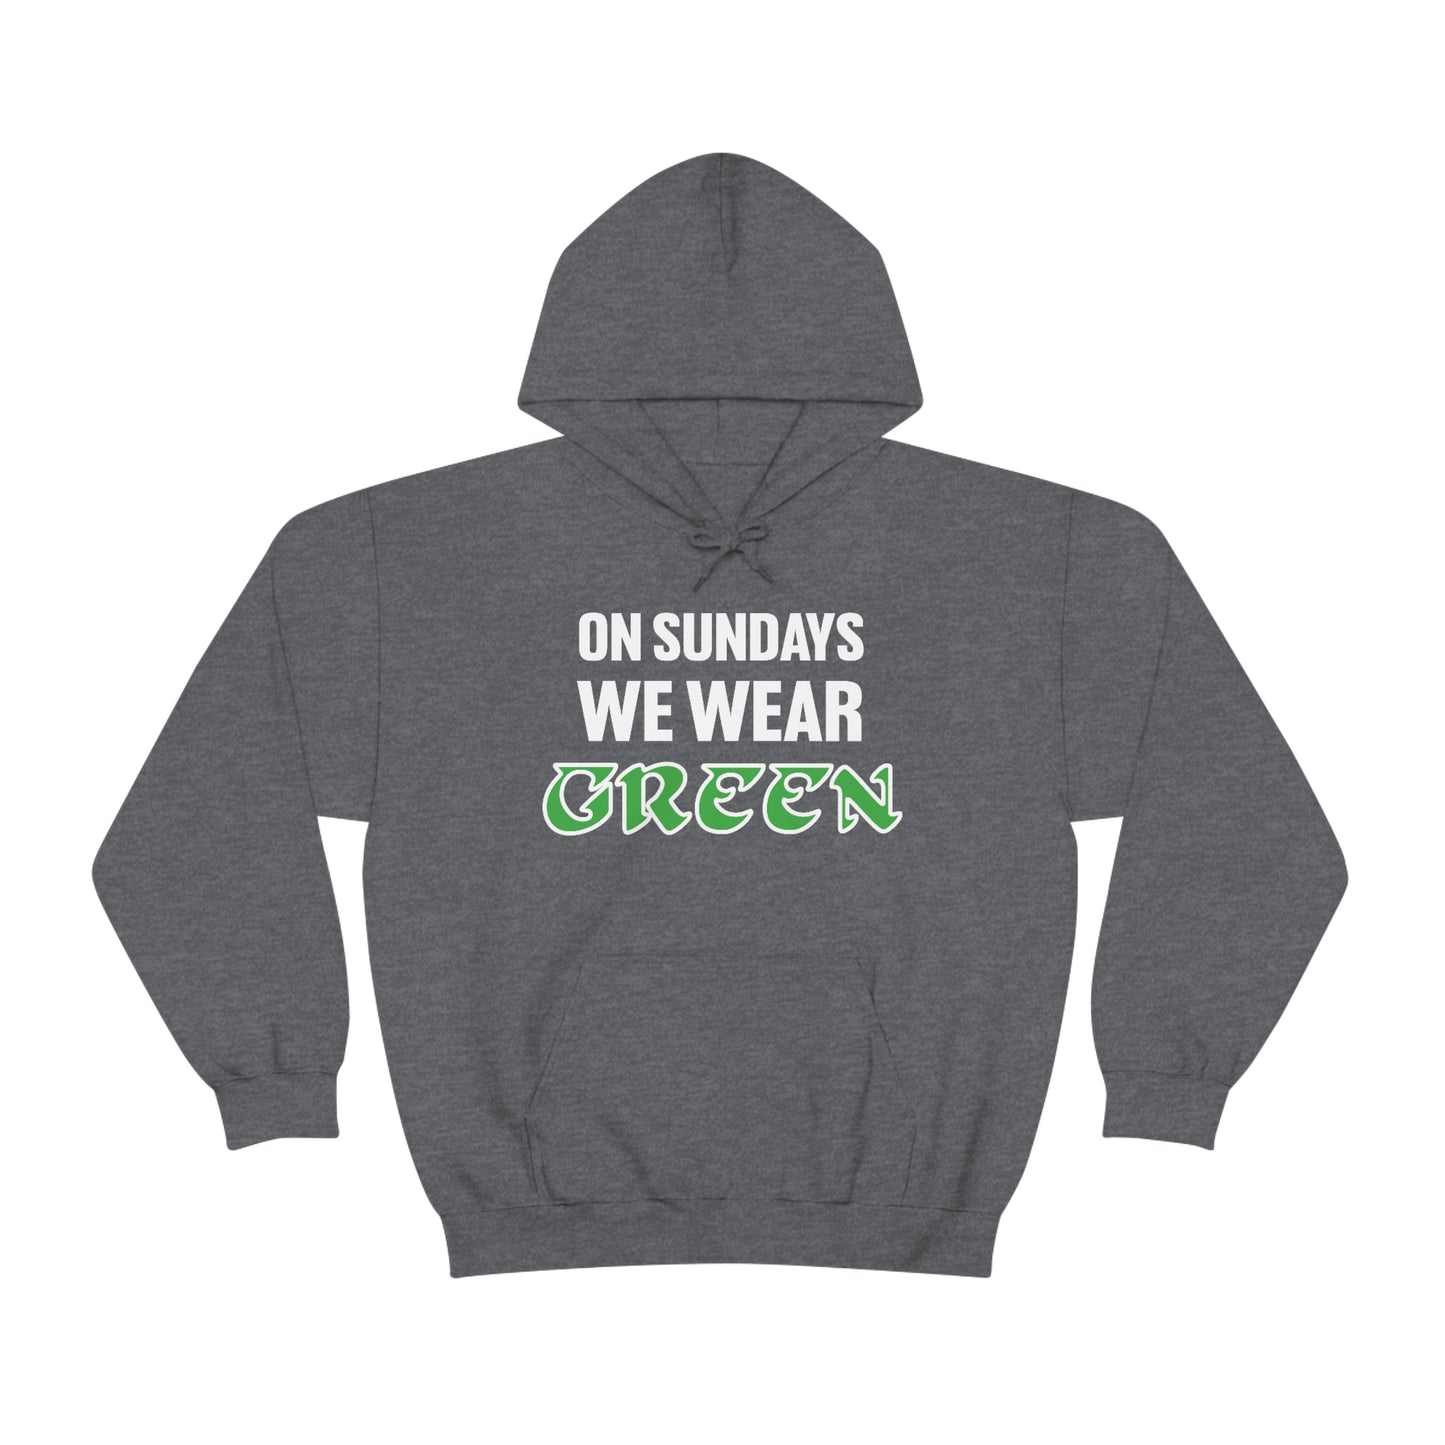 On Sundays We Wear Green Hoodie | Philadelphia Football Hoodie | Eagles Hoodie | Premium Unisex Hooded Sweatshirt